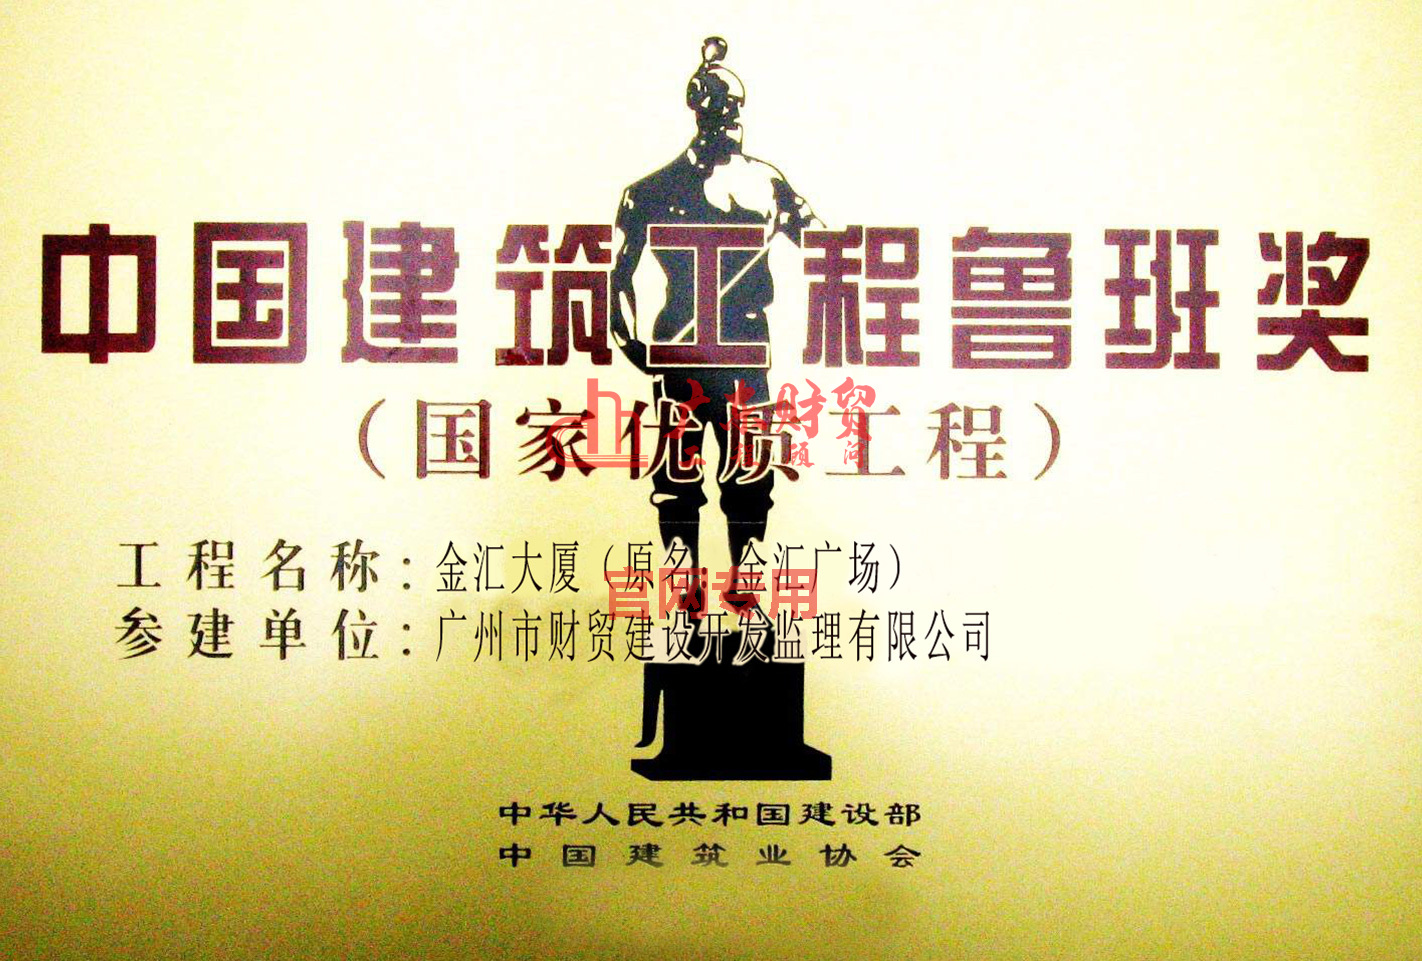 中国建筑正程鲁班奖